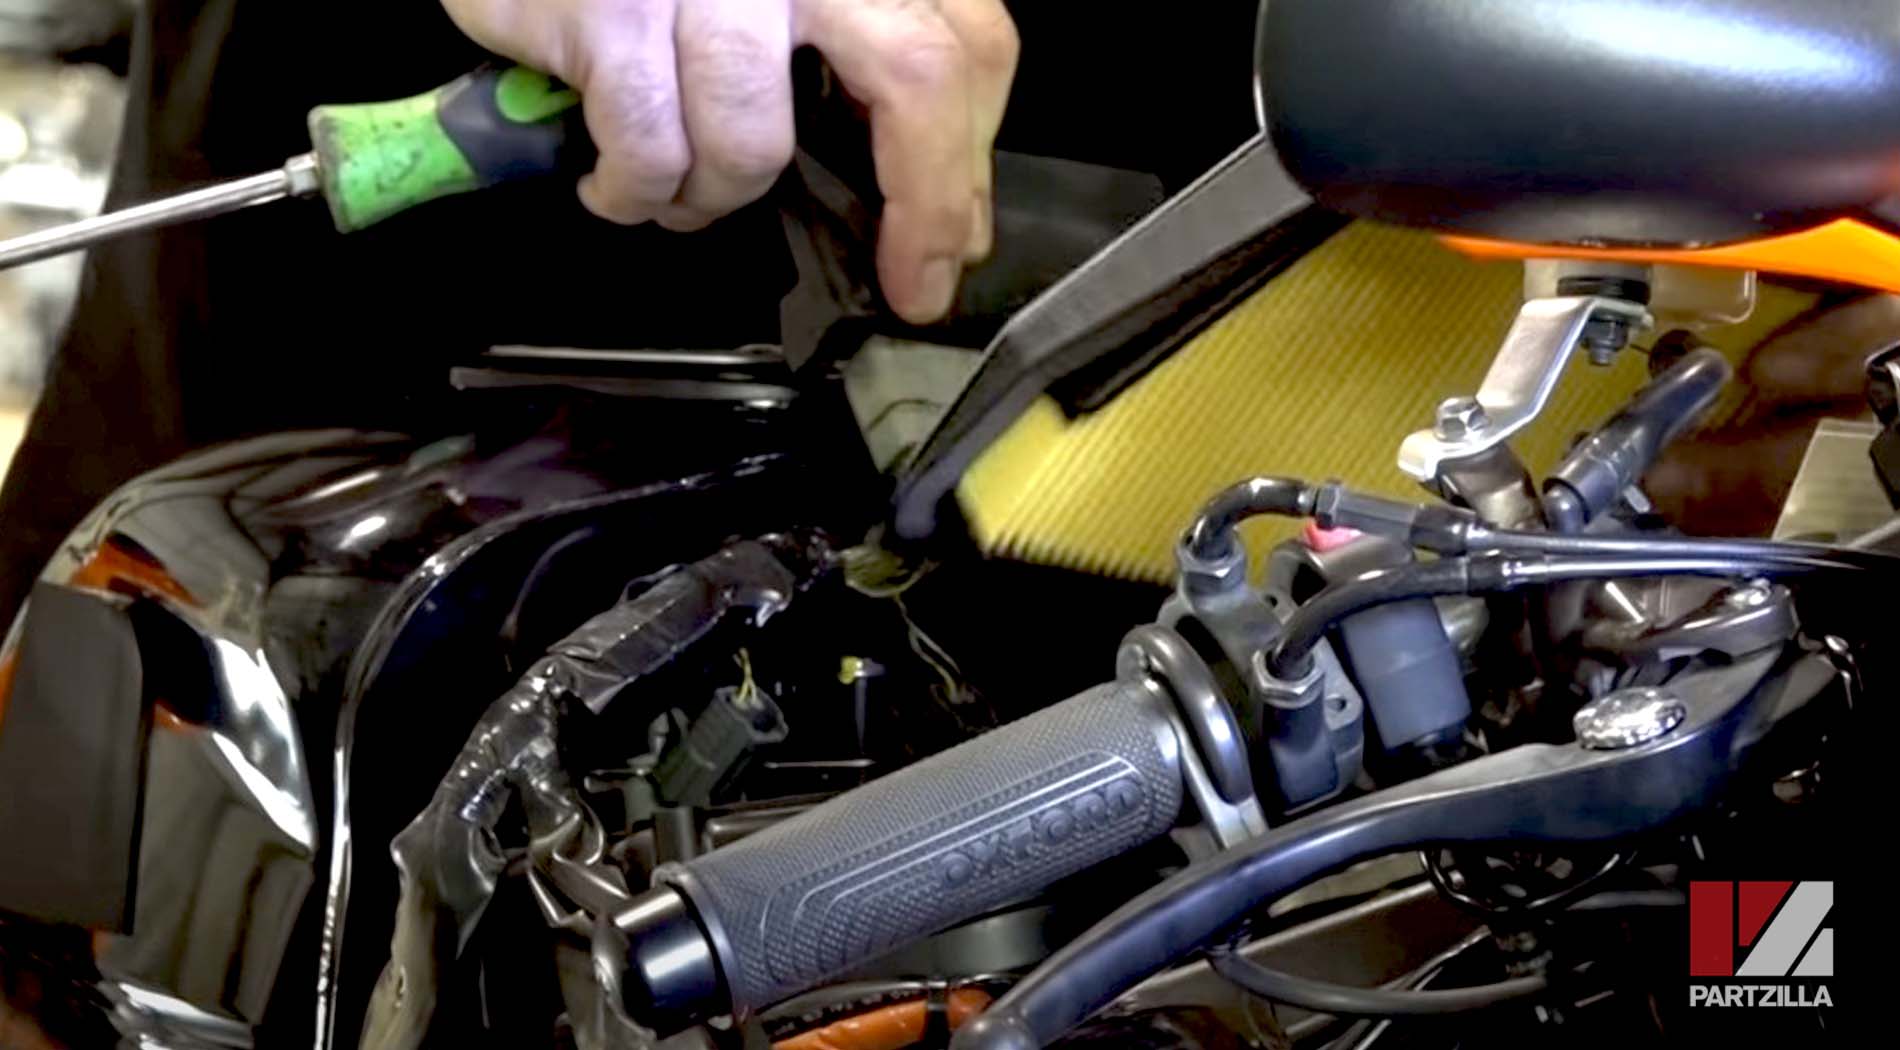 Honda CBR 600 dyno horsepower test clean air filter